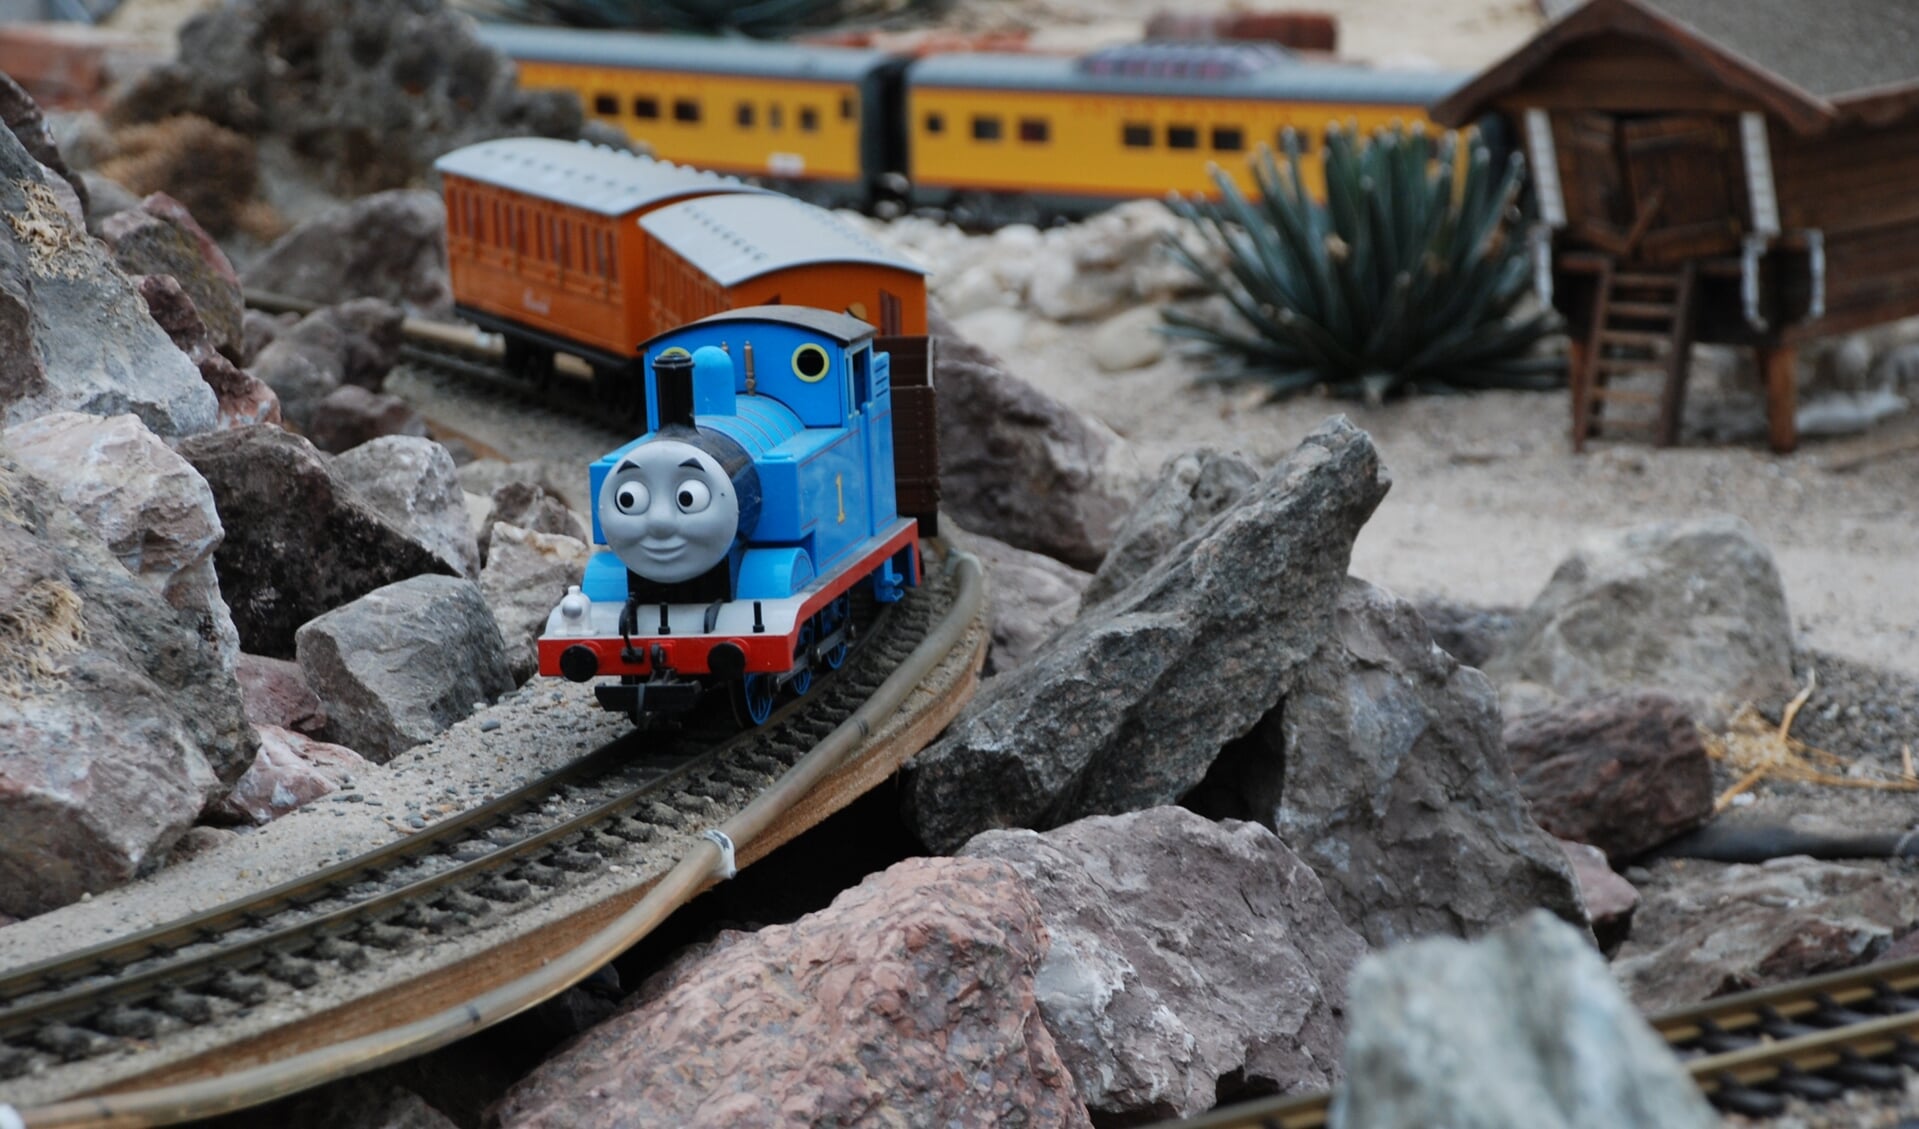 In de Cactus Oase rijden modeltreinen, waaronder Thomas de trein. Foto: PR